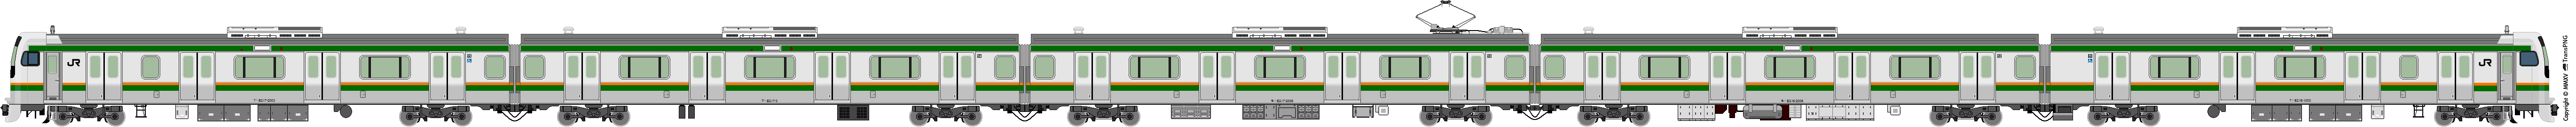 5009 - [5009] East Japan Railway 52161582312_9179524abd_o